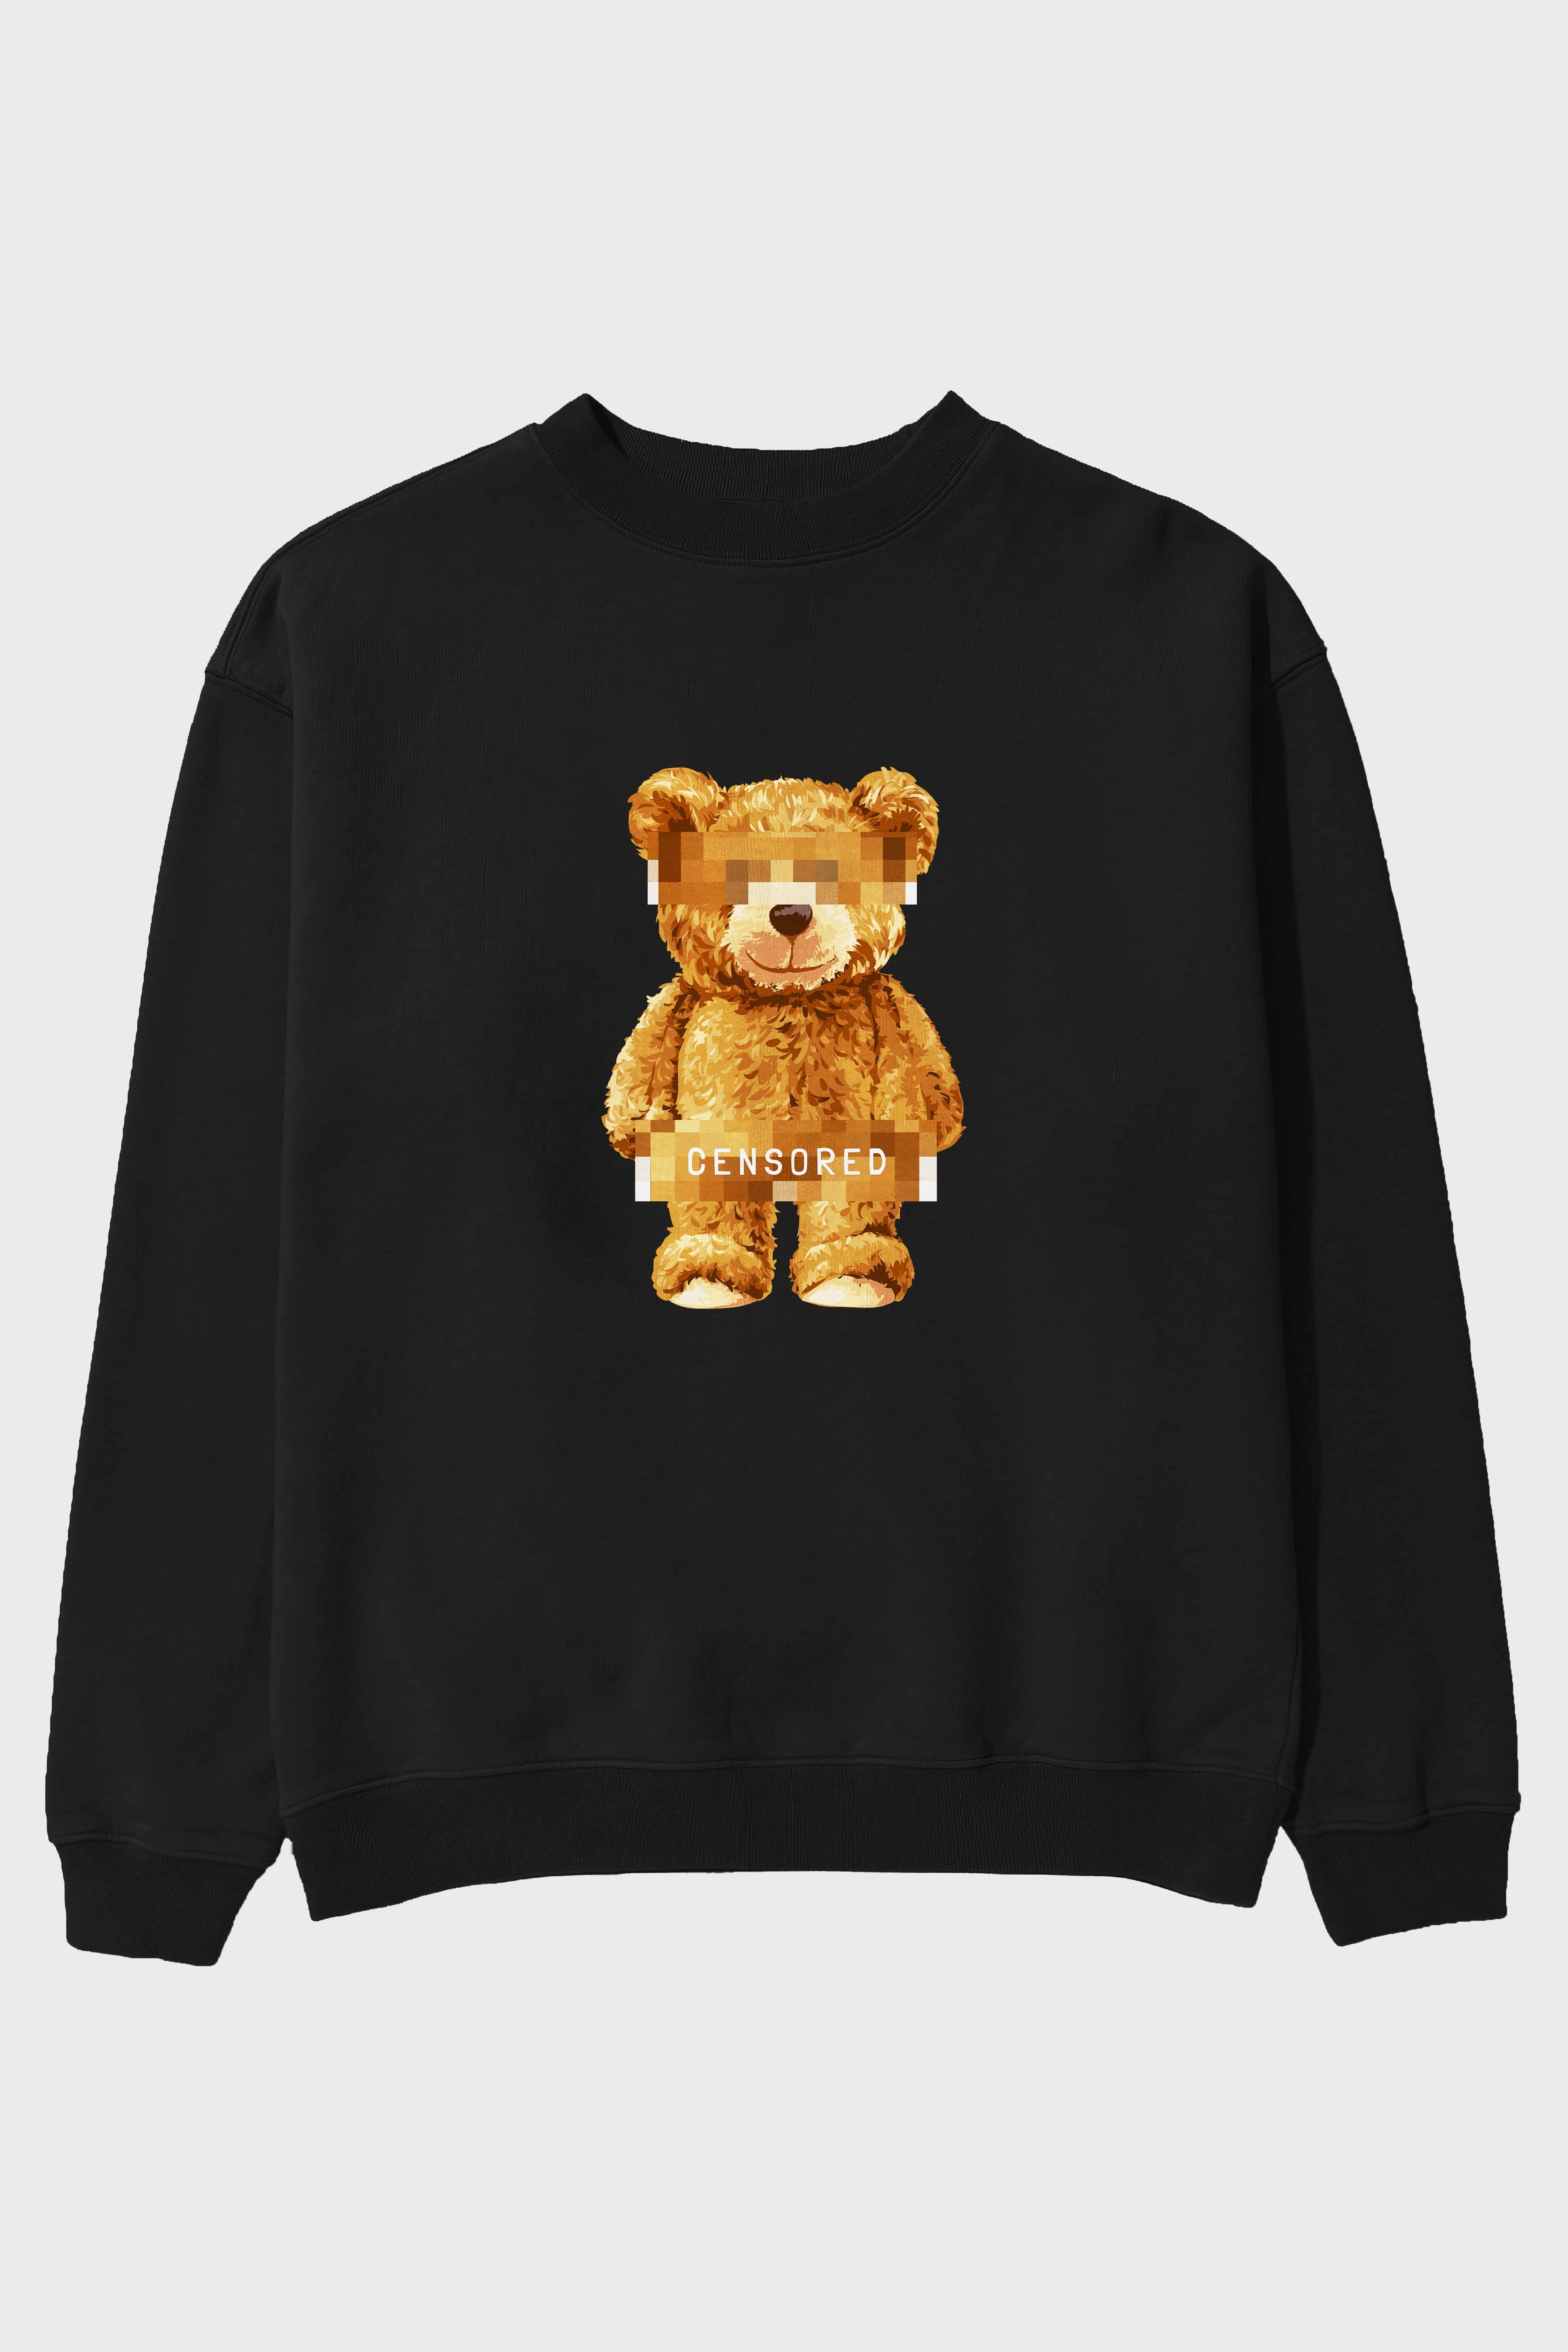 Teddy Bear Censored Ön Baskılı Oversize Sweatshirt Erkek Kadın Unisex